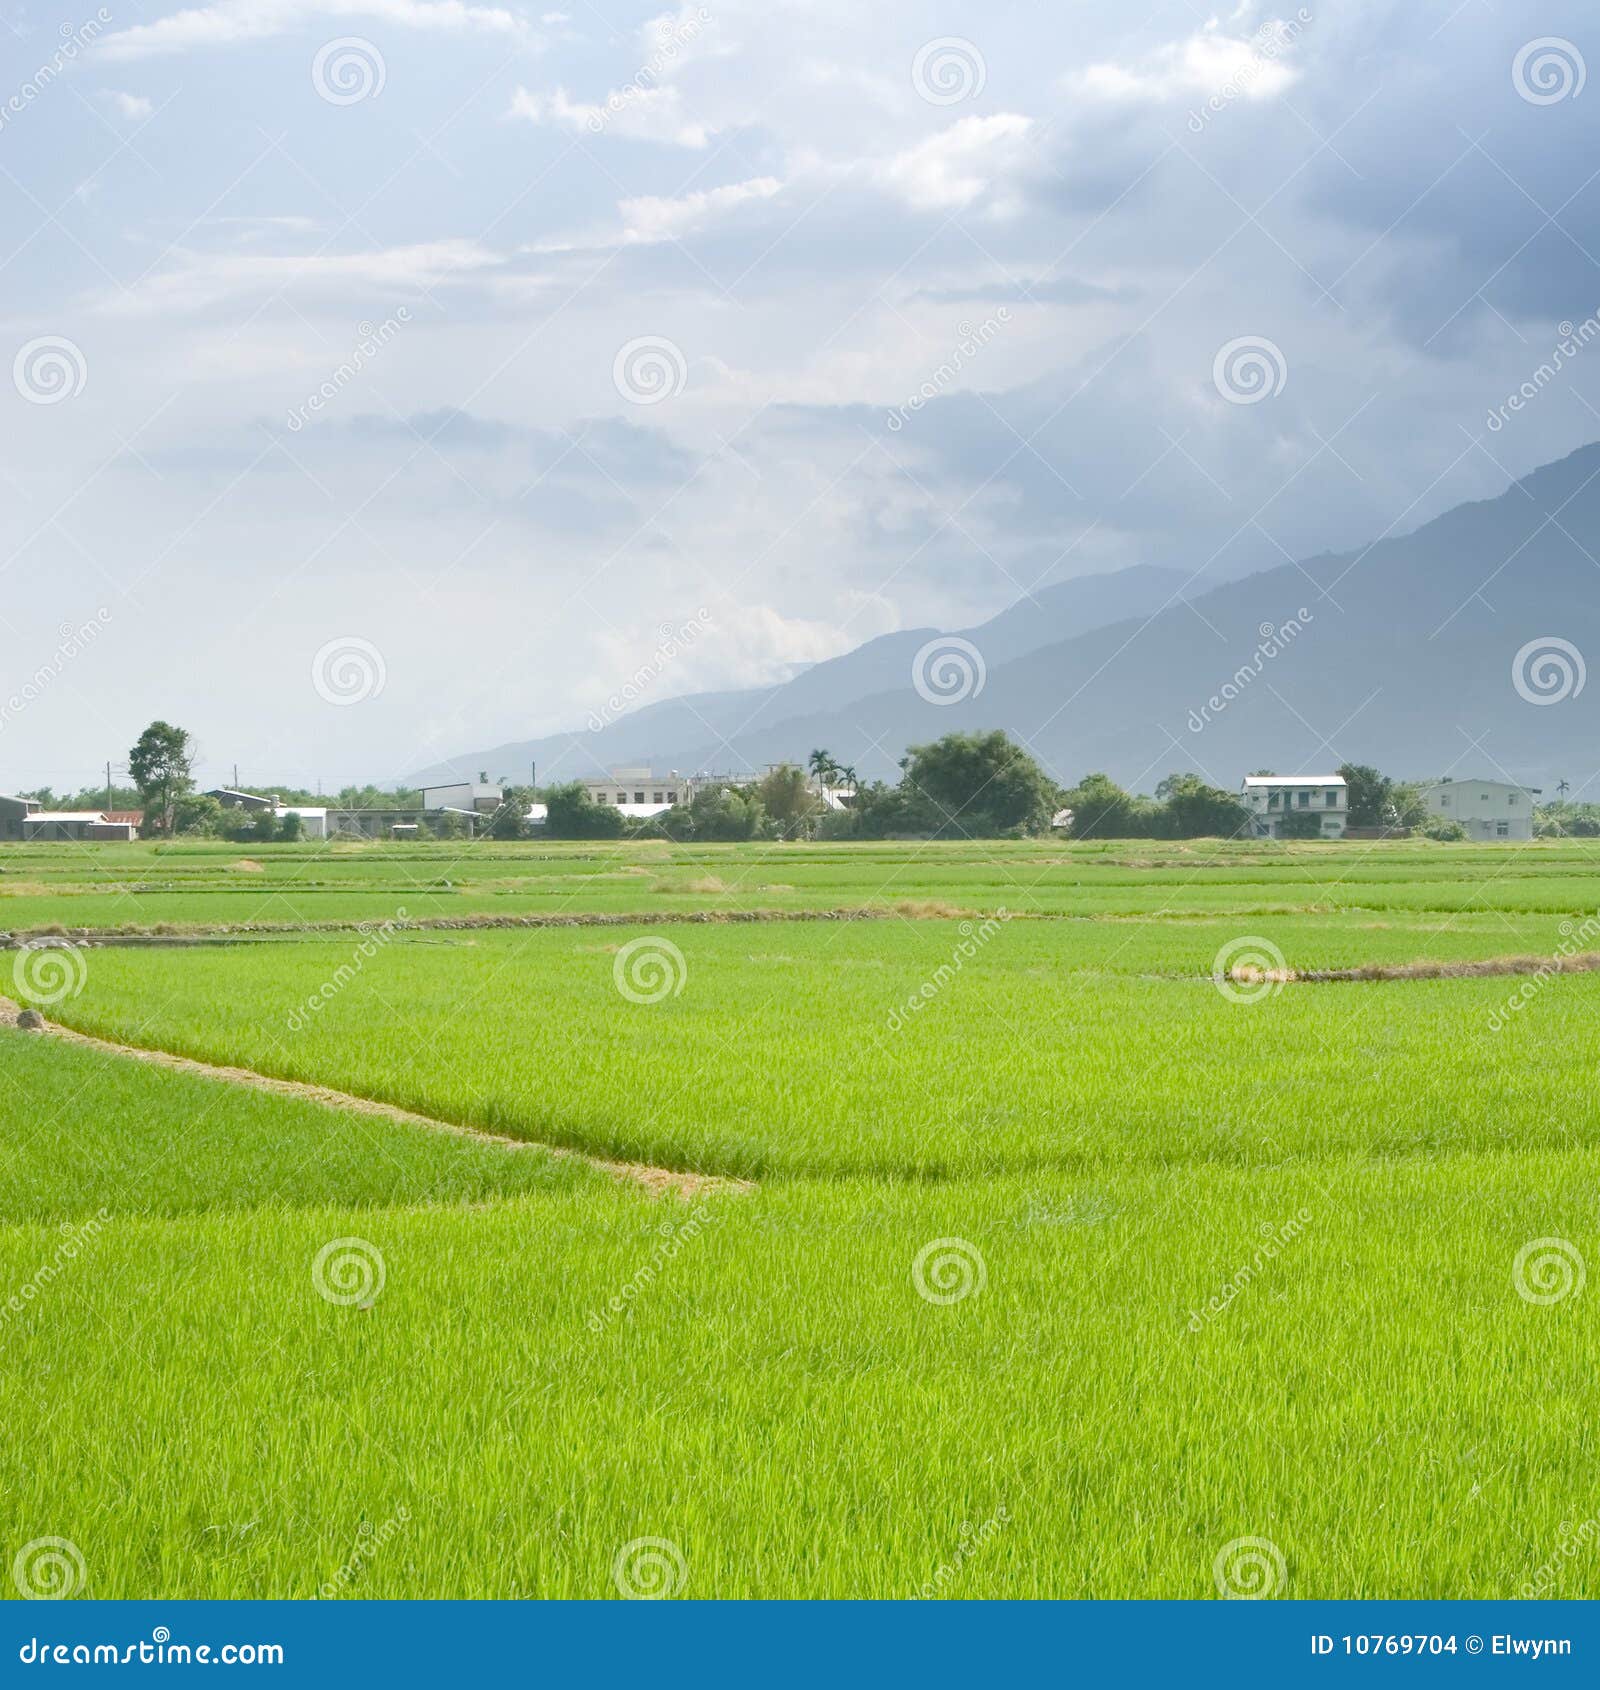 Landscape of beautiful green farm. It is a landscape of beautiful green terraced field.